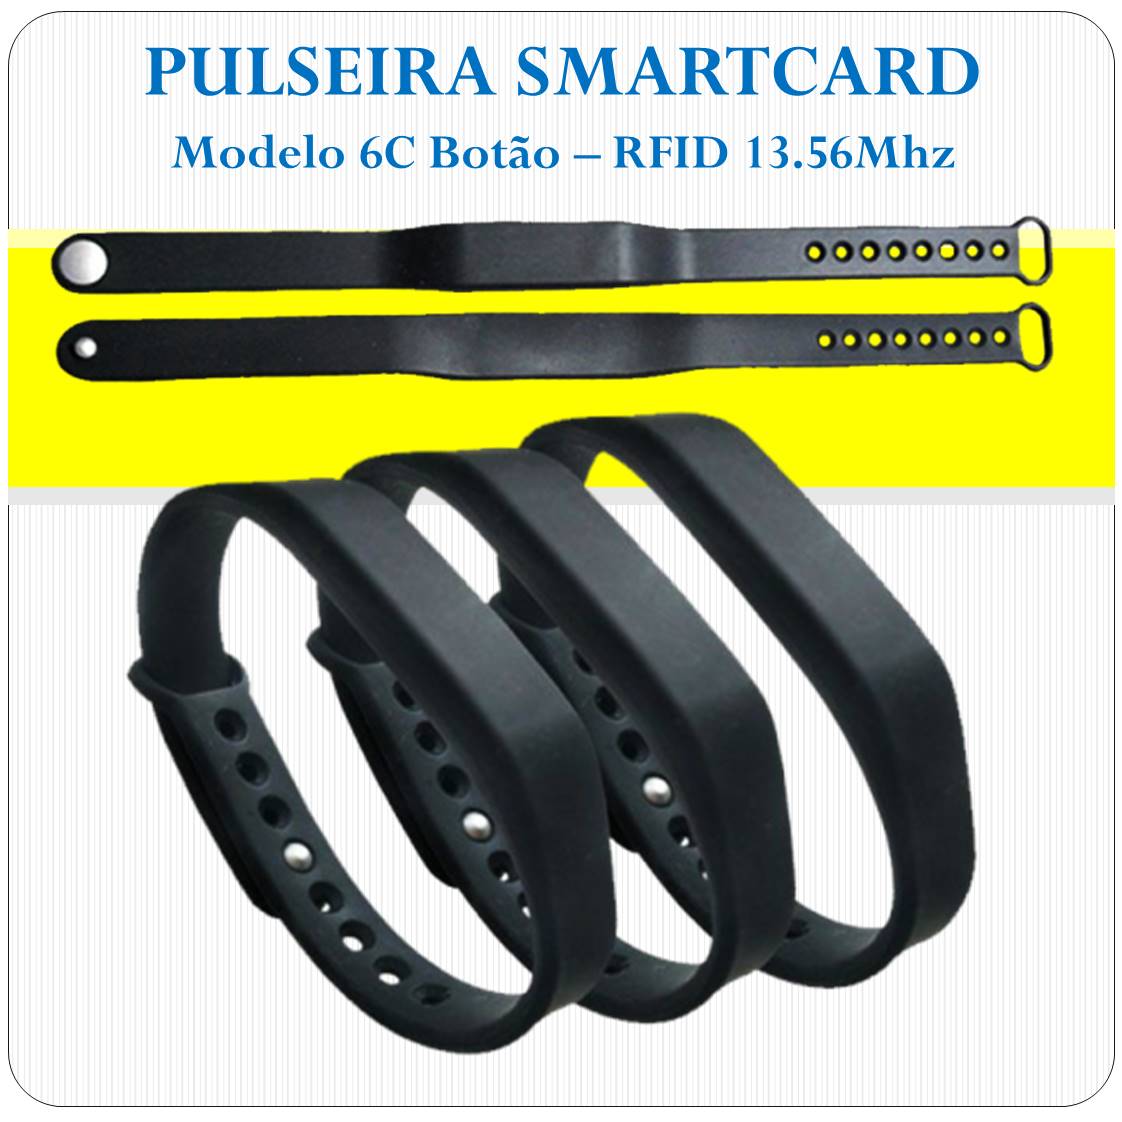 Pulseira RFID Smart Card 13.56 Mhz - Botão - 6C